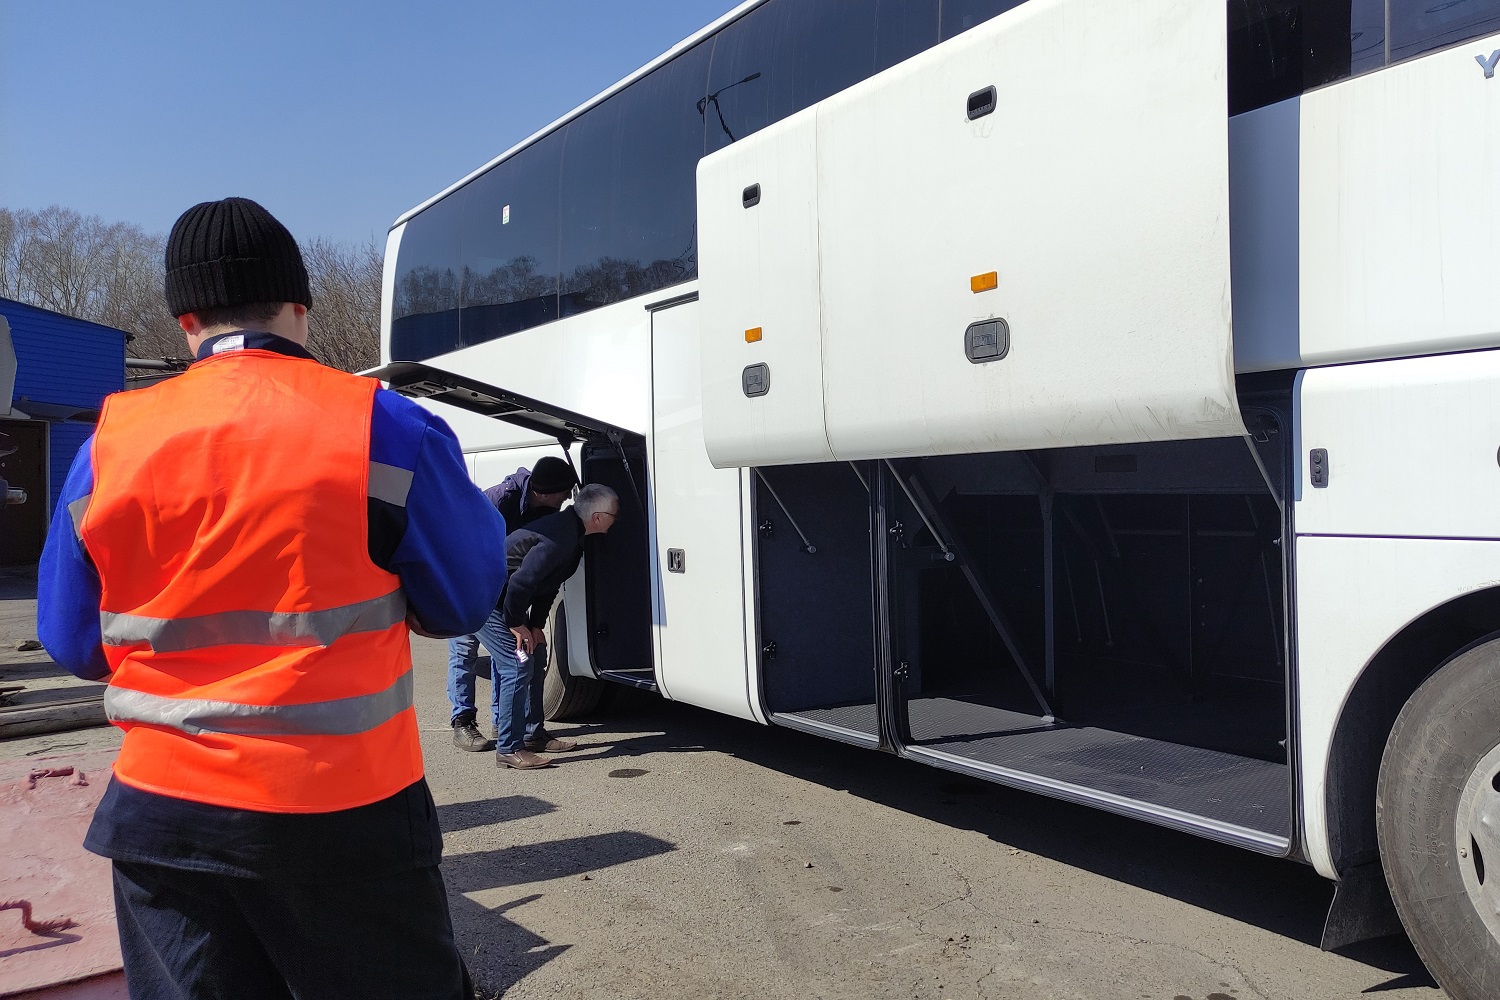 Горняков компании будут доставлять на работу на новых комфортных автобусах производства КНР. Стройсервис